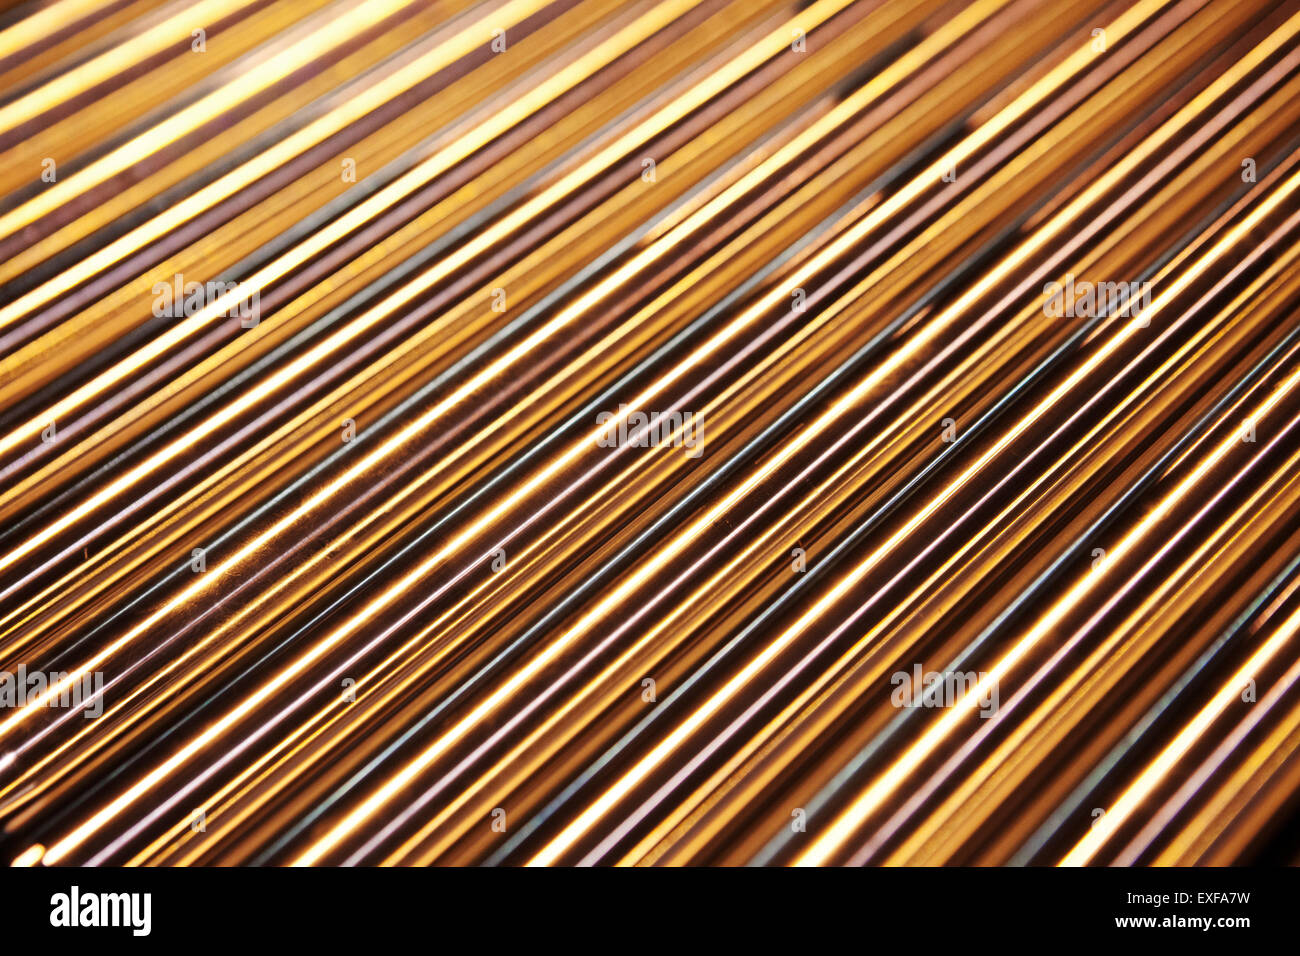 Metal rods, close-up Stock Photo